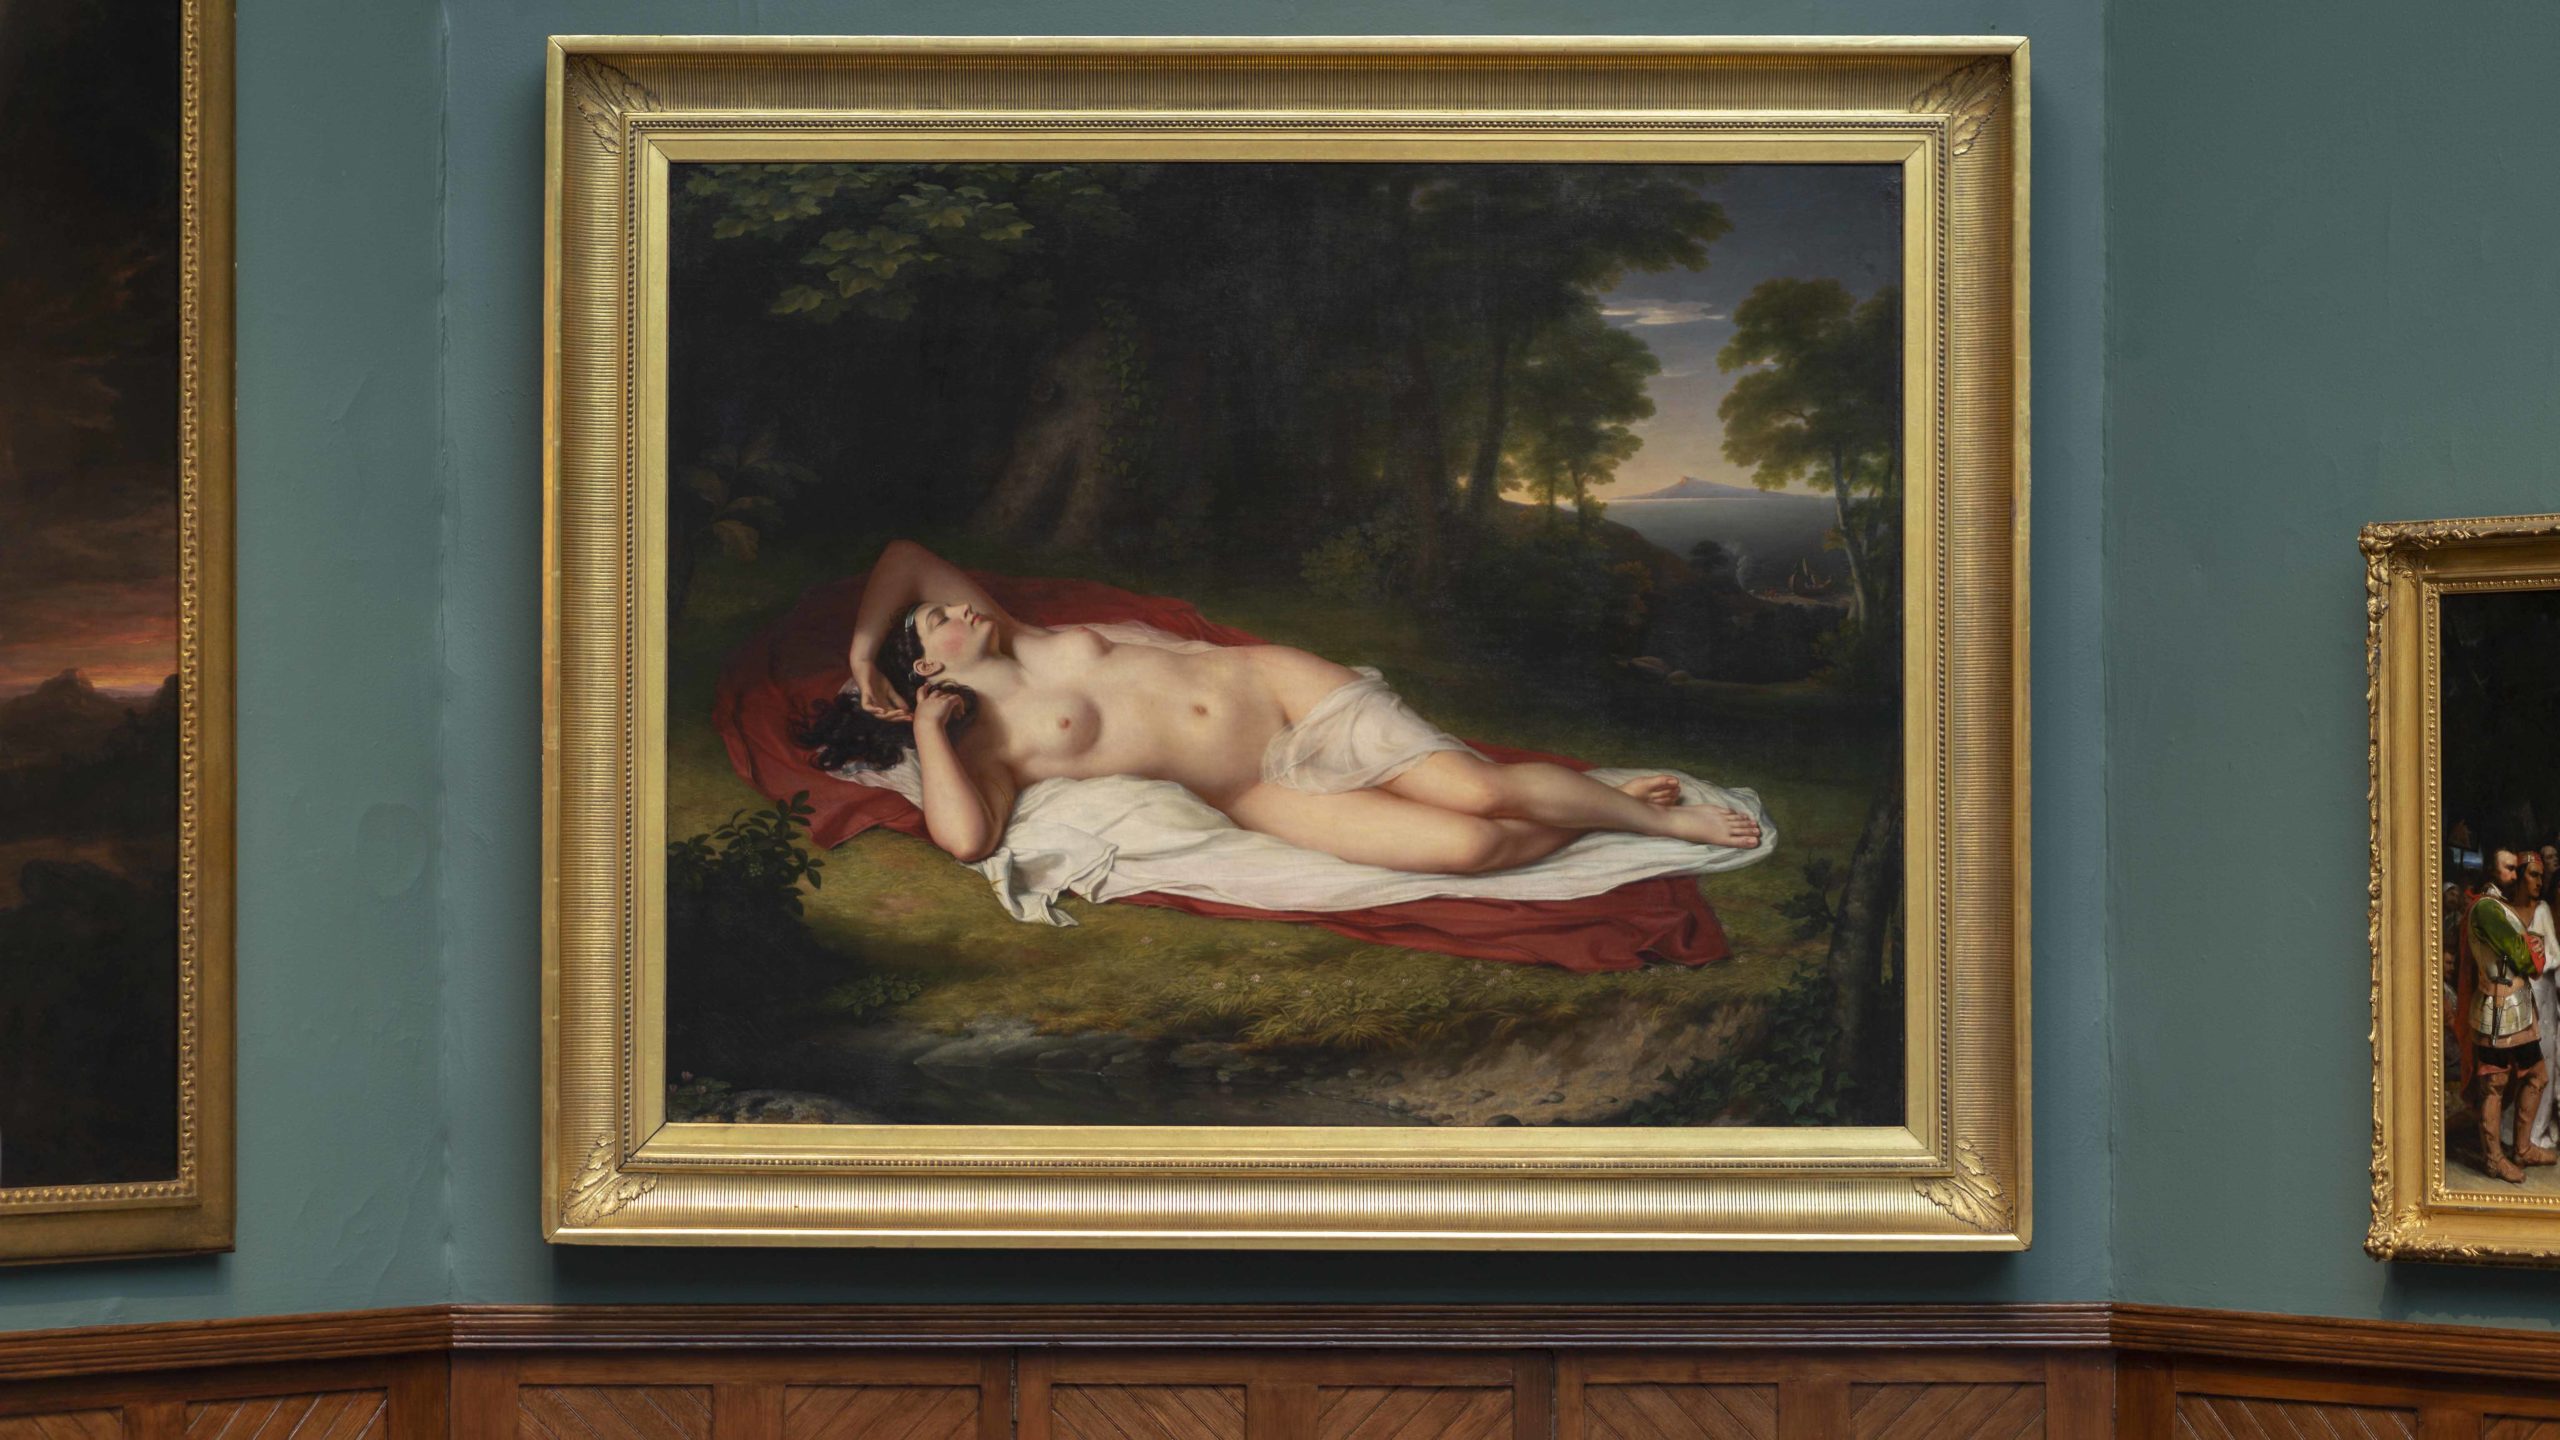 John Vanderlyn, Ariadne Asleep on the Island of Naxos, 1809-14, oil on canvas, 174.0 x 221.0 cm (The Pennsylvania Academy of the Fine Arts)